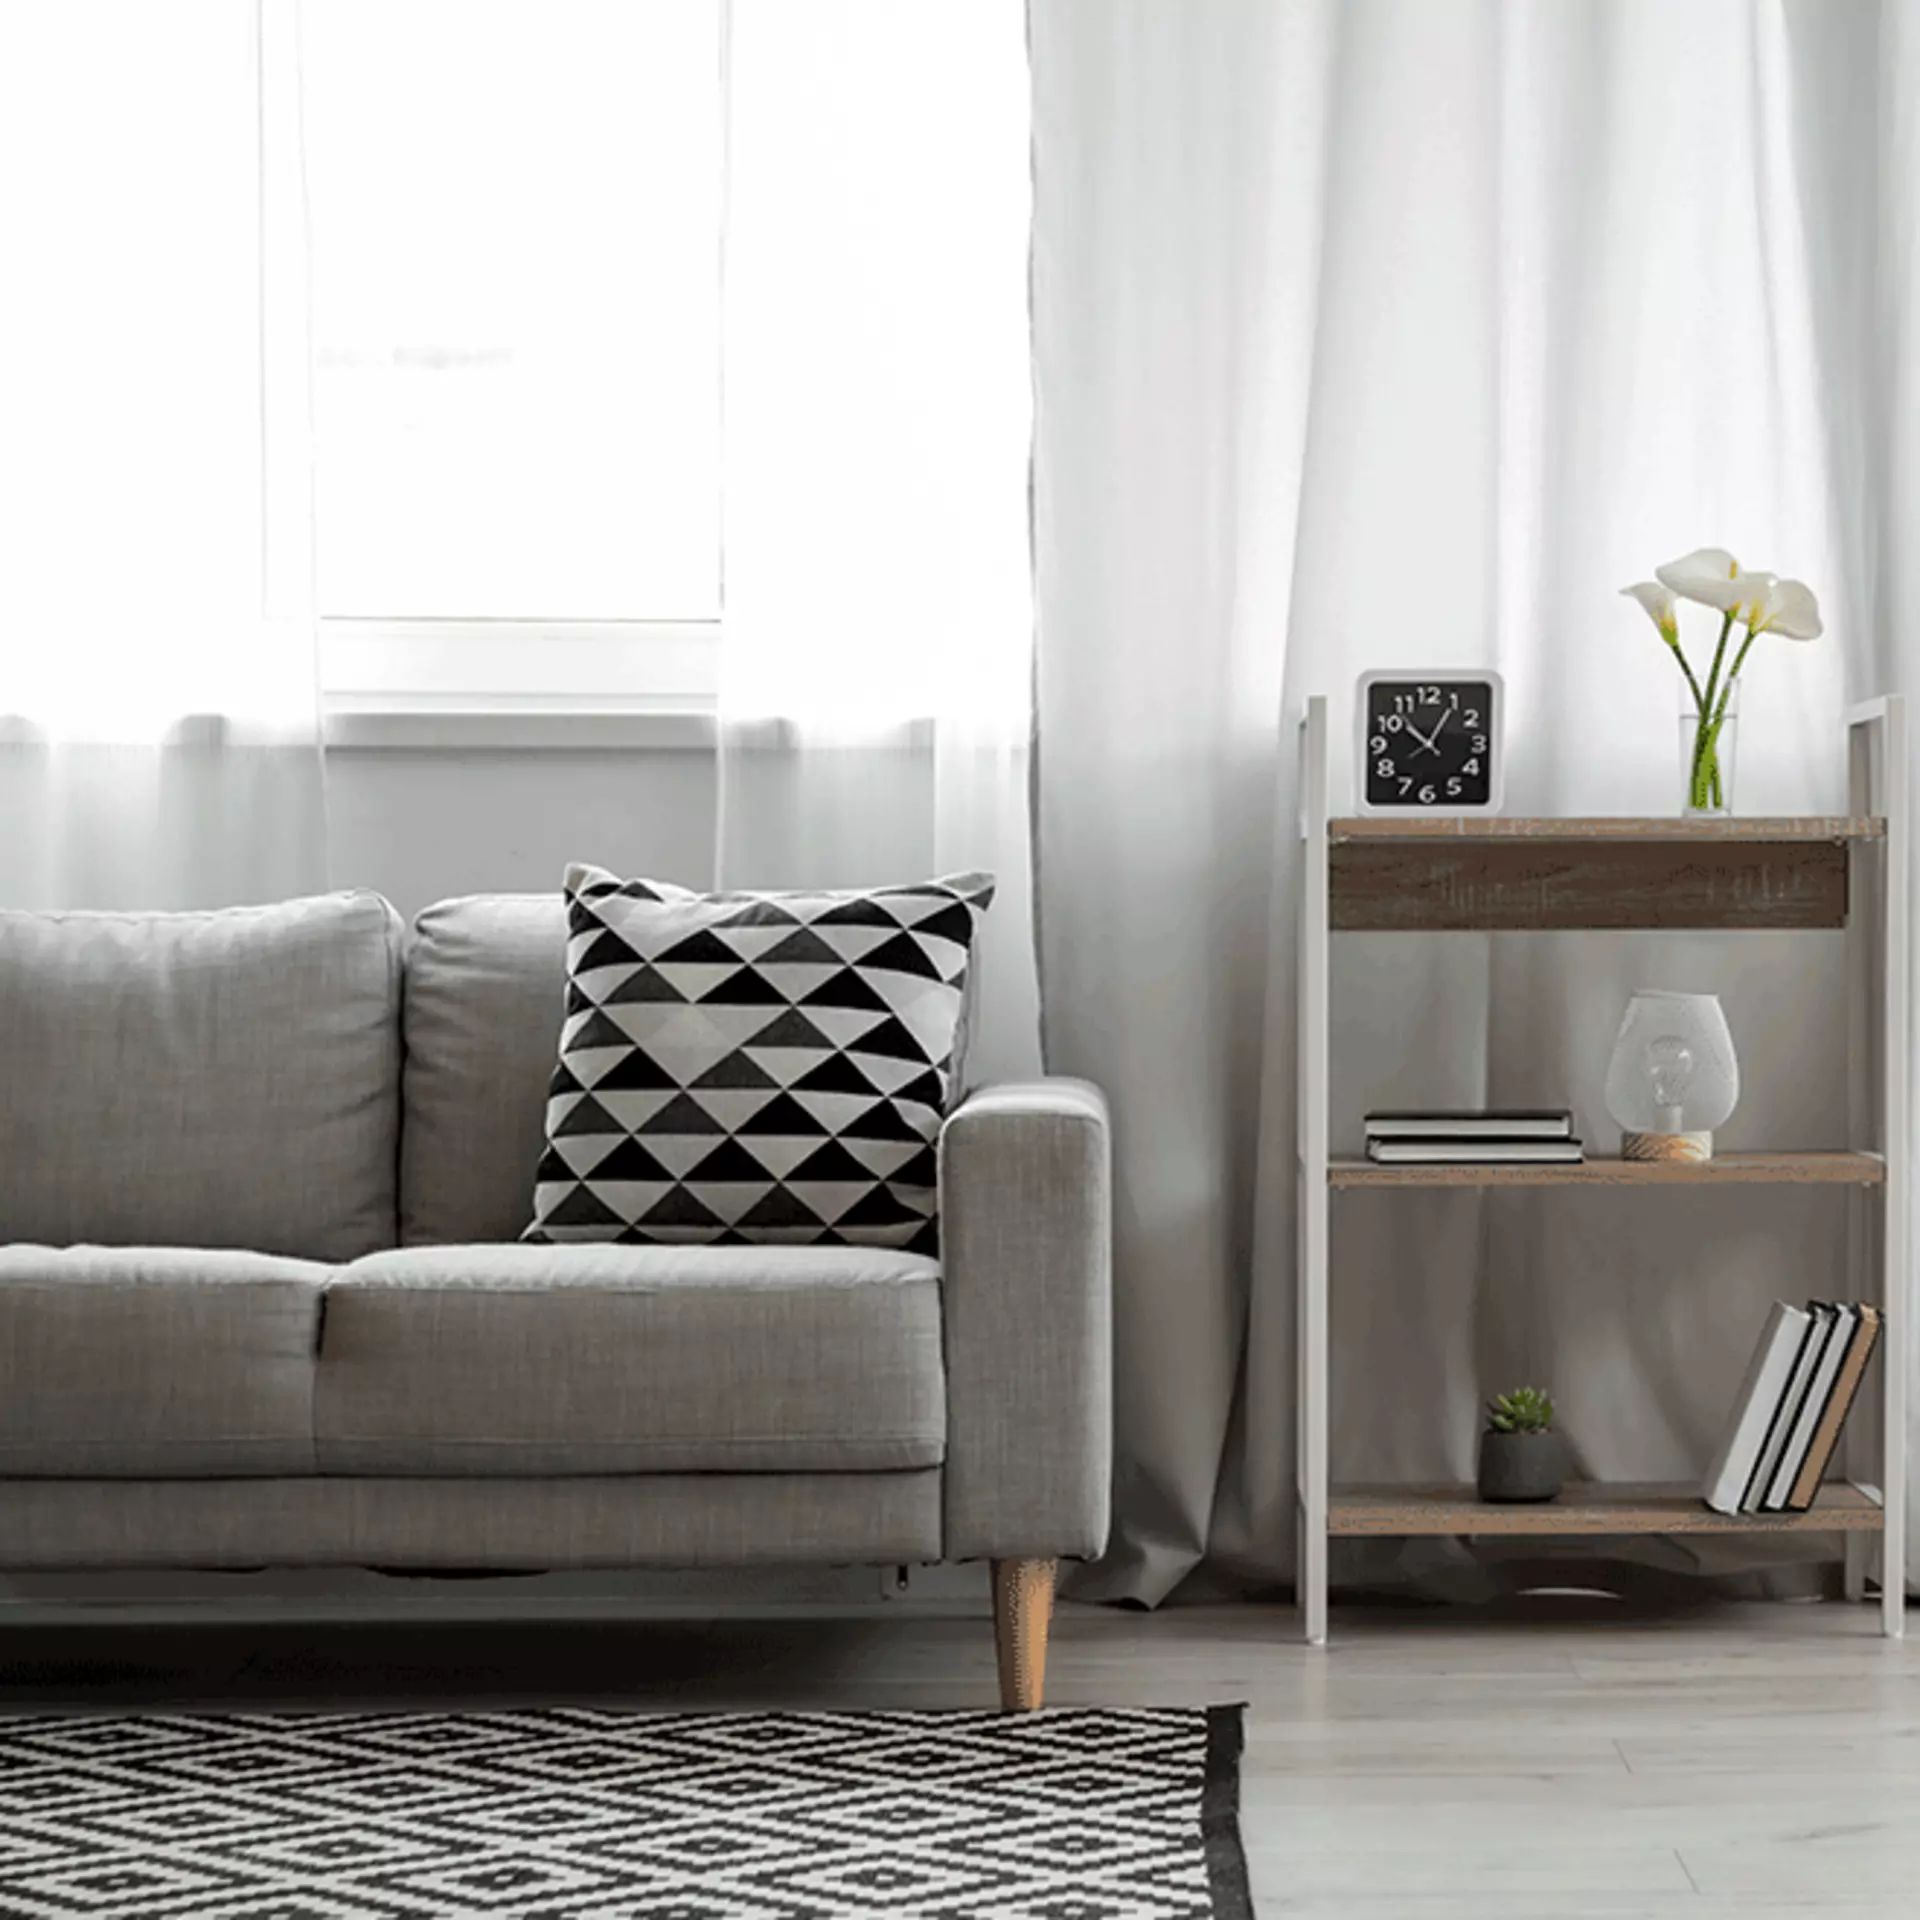 Ein hellgraues Sofa und ein weißes Regal, dekoriert mit kleinen Topfpflanzen und schwarzen und weißen Akzenten.